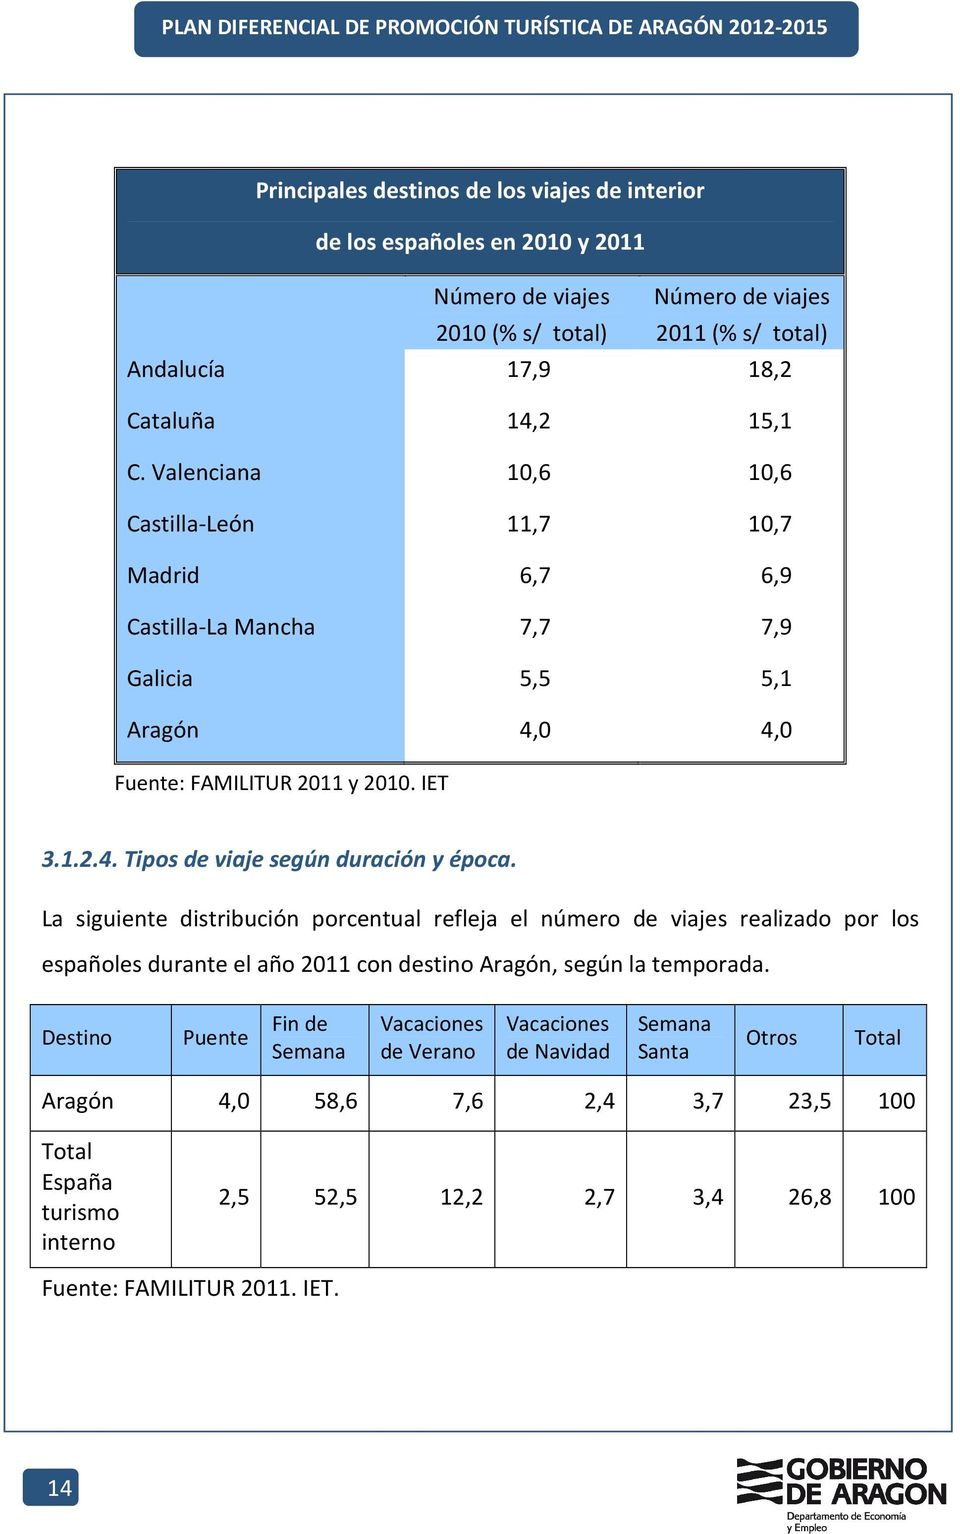 La siguiente distribución porcentual refleja el número de viajes realizado por los españoles durante el año 2011 con destino Aragón, según la temporada.